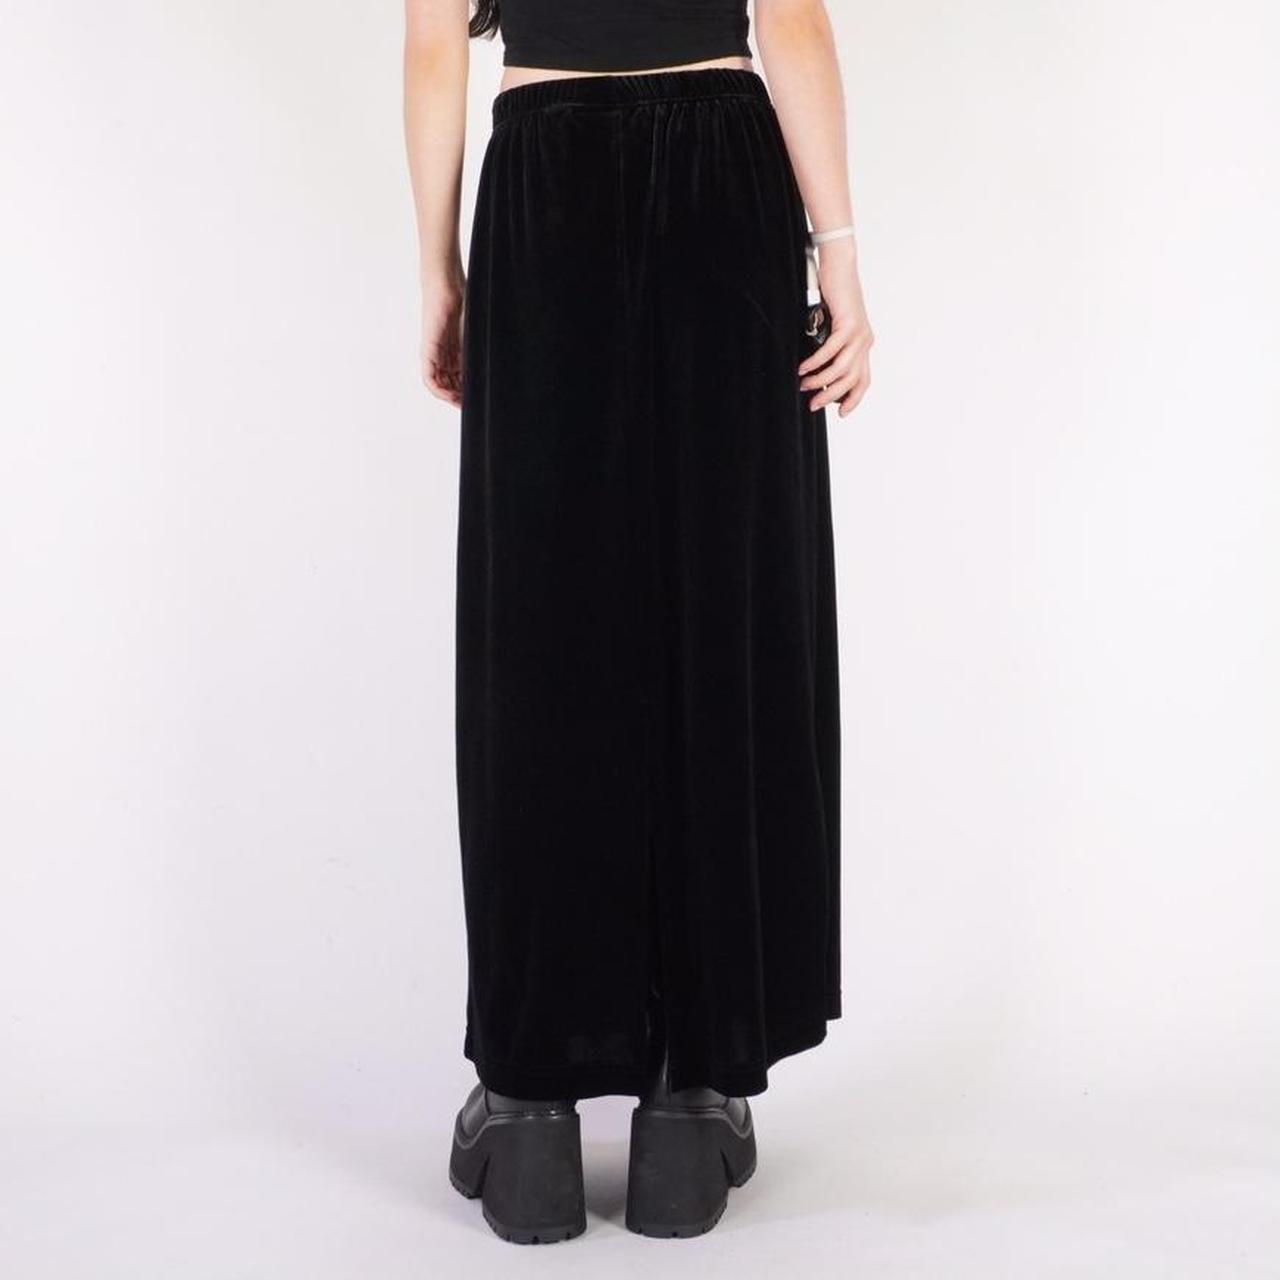 90s black velvet maxi skirt w/ stretch waist Brand:... - Depop